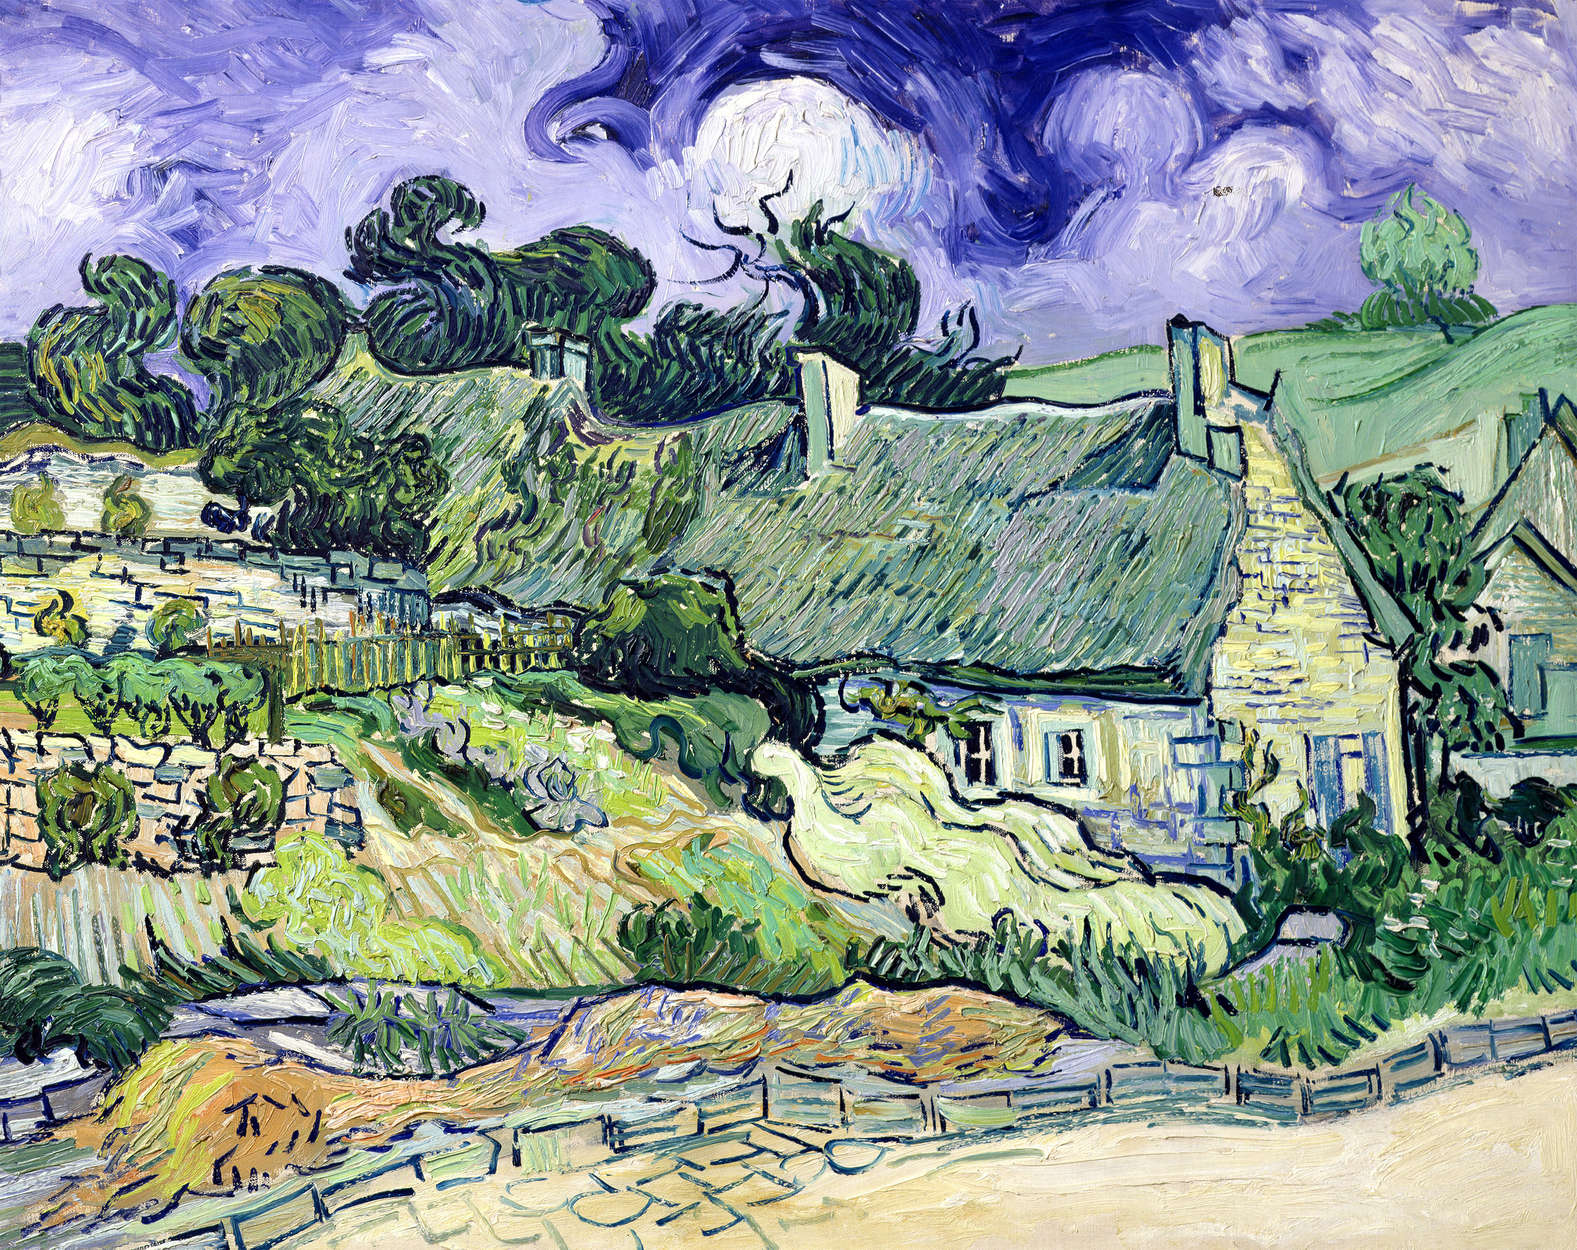             Papier peint panoramique "chaumières à Cordeville" de Vincent van Gogh
        